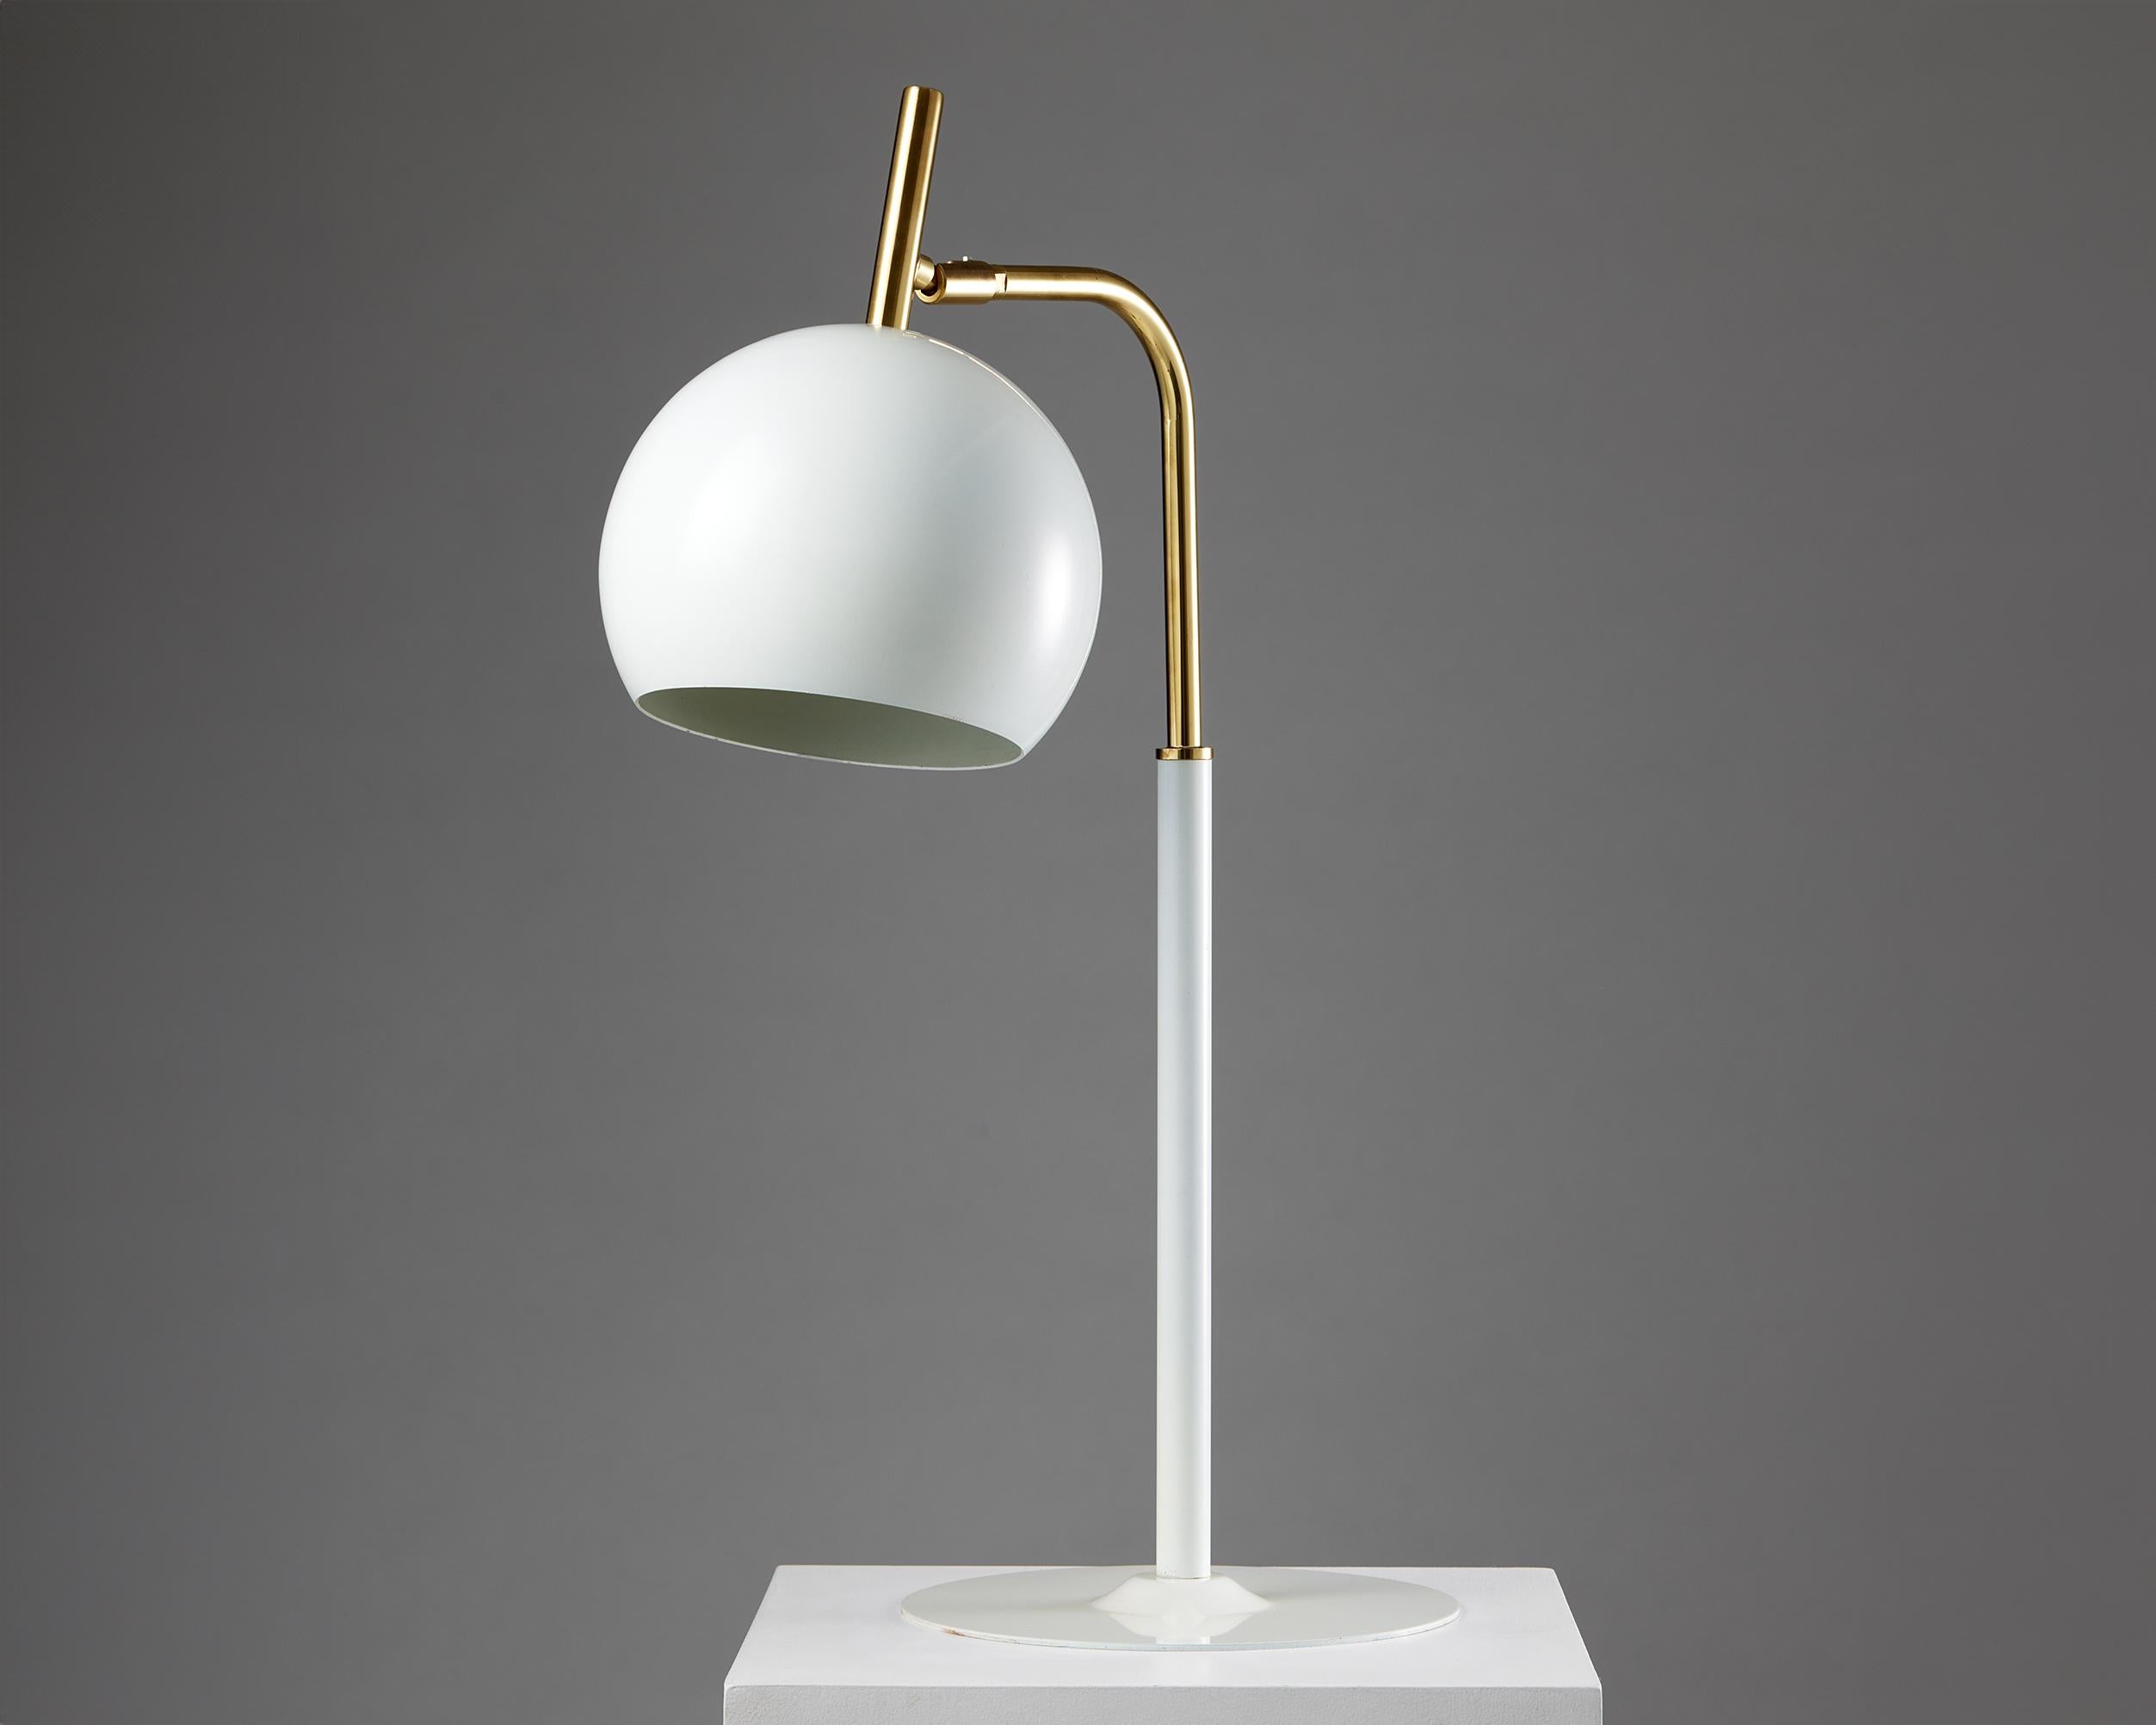 Lampe de table modèle B 275 conçue par Hans-Agne Jakobsson pour Markaryd,
Suède, années 1960.

Laiton et métal laqué blanc.

Estampillé.

H : 70 cm
Diamètre de la base : 26 cm 
Diamètre de l'abat-jour : 22 cm